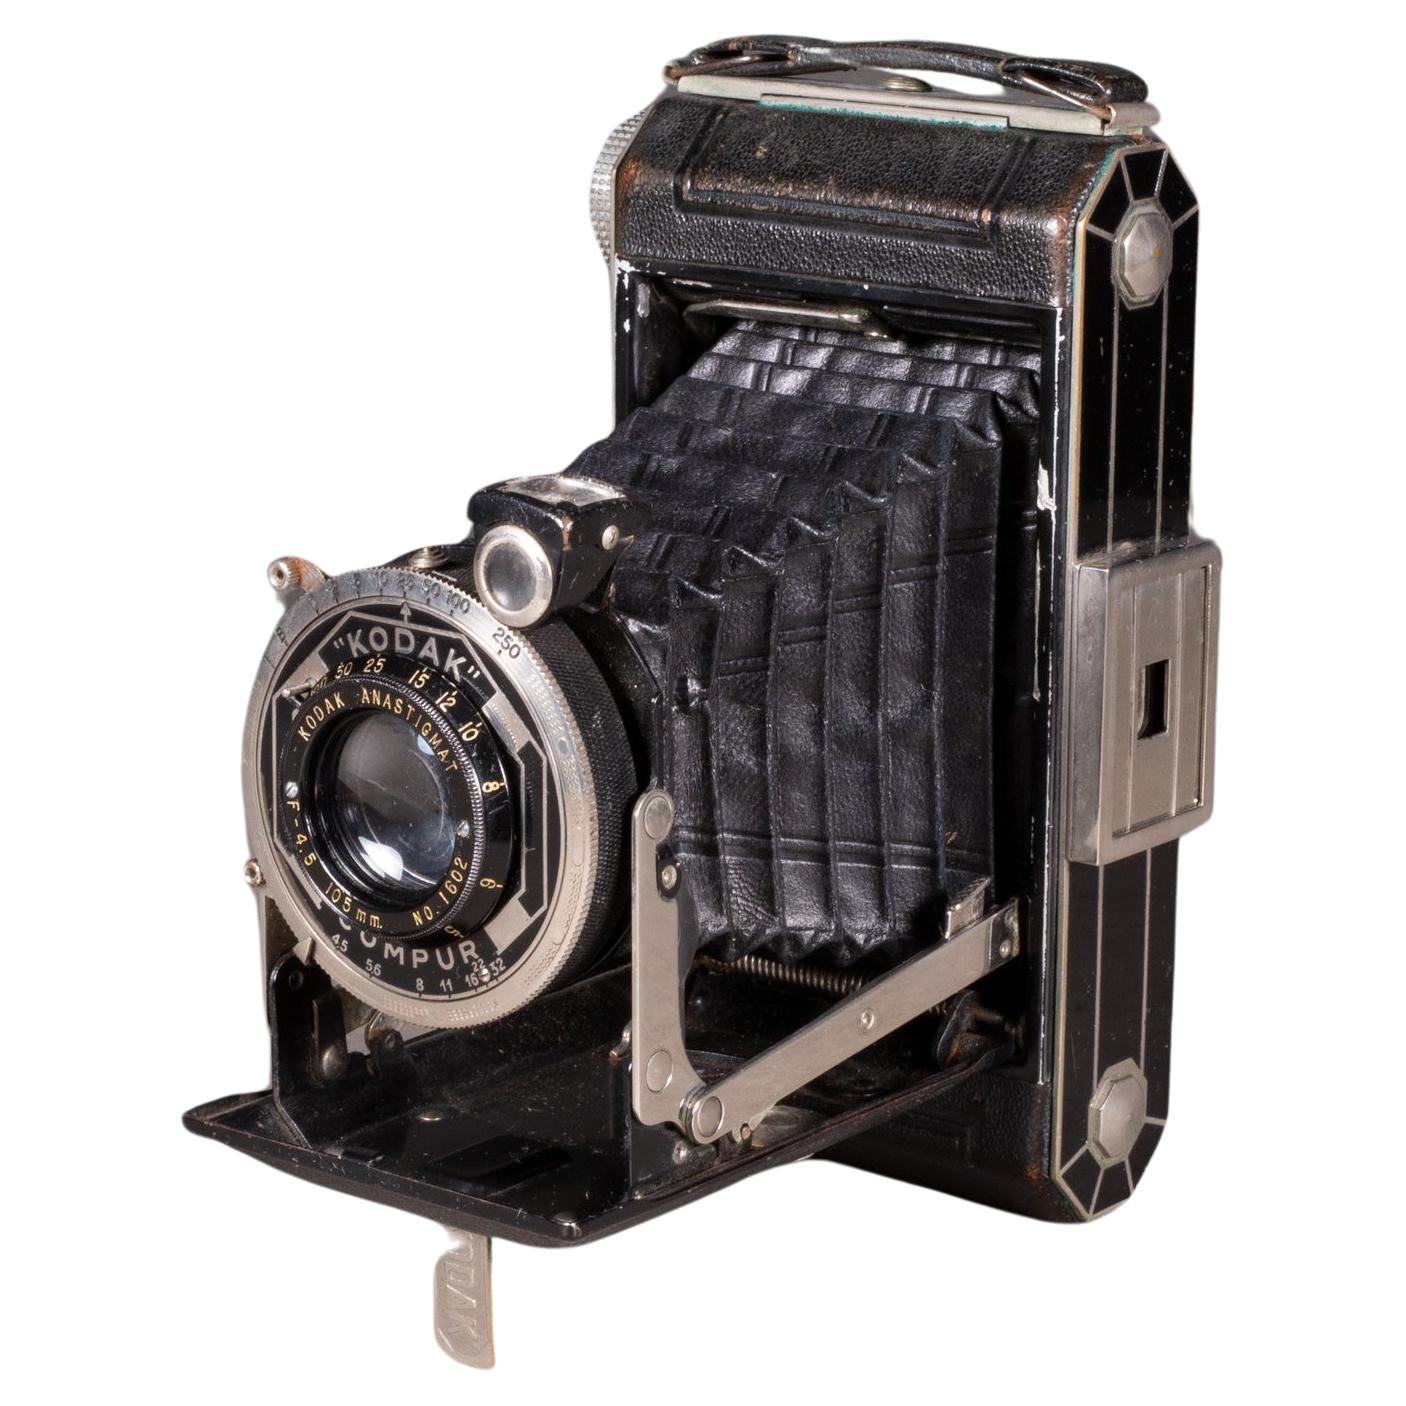 Art Deco Kodak Compur Model Six-20 Folding Camera c.1930